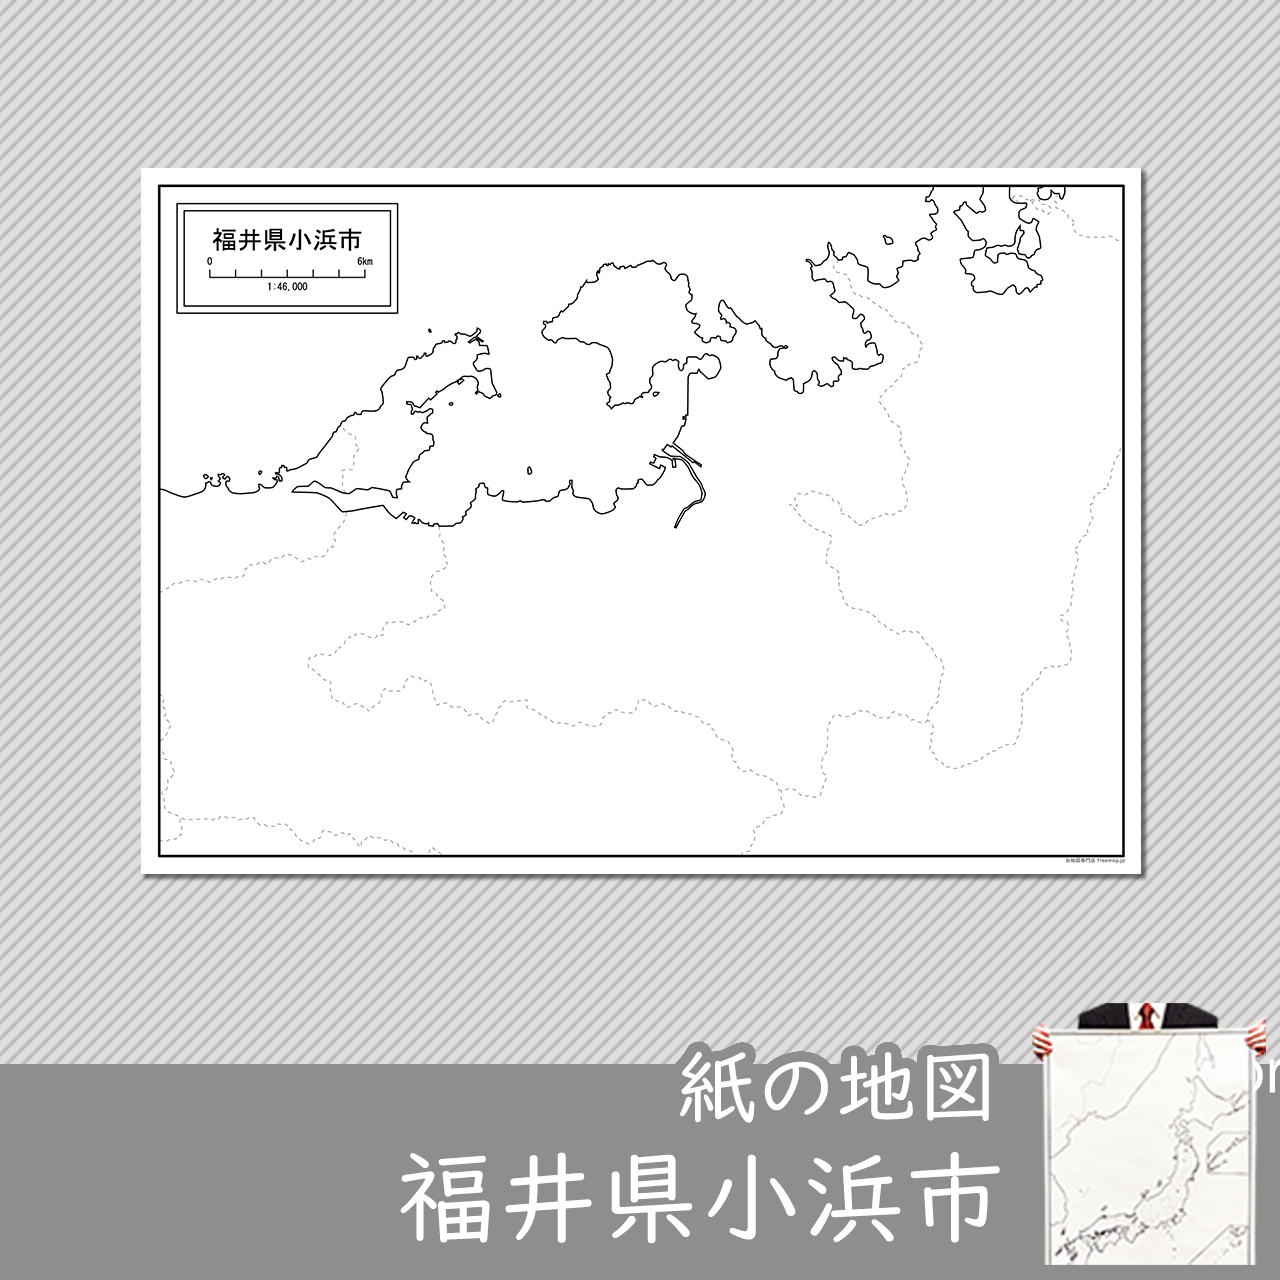 小浜市の紙の白地図のサムネイル